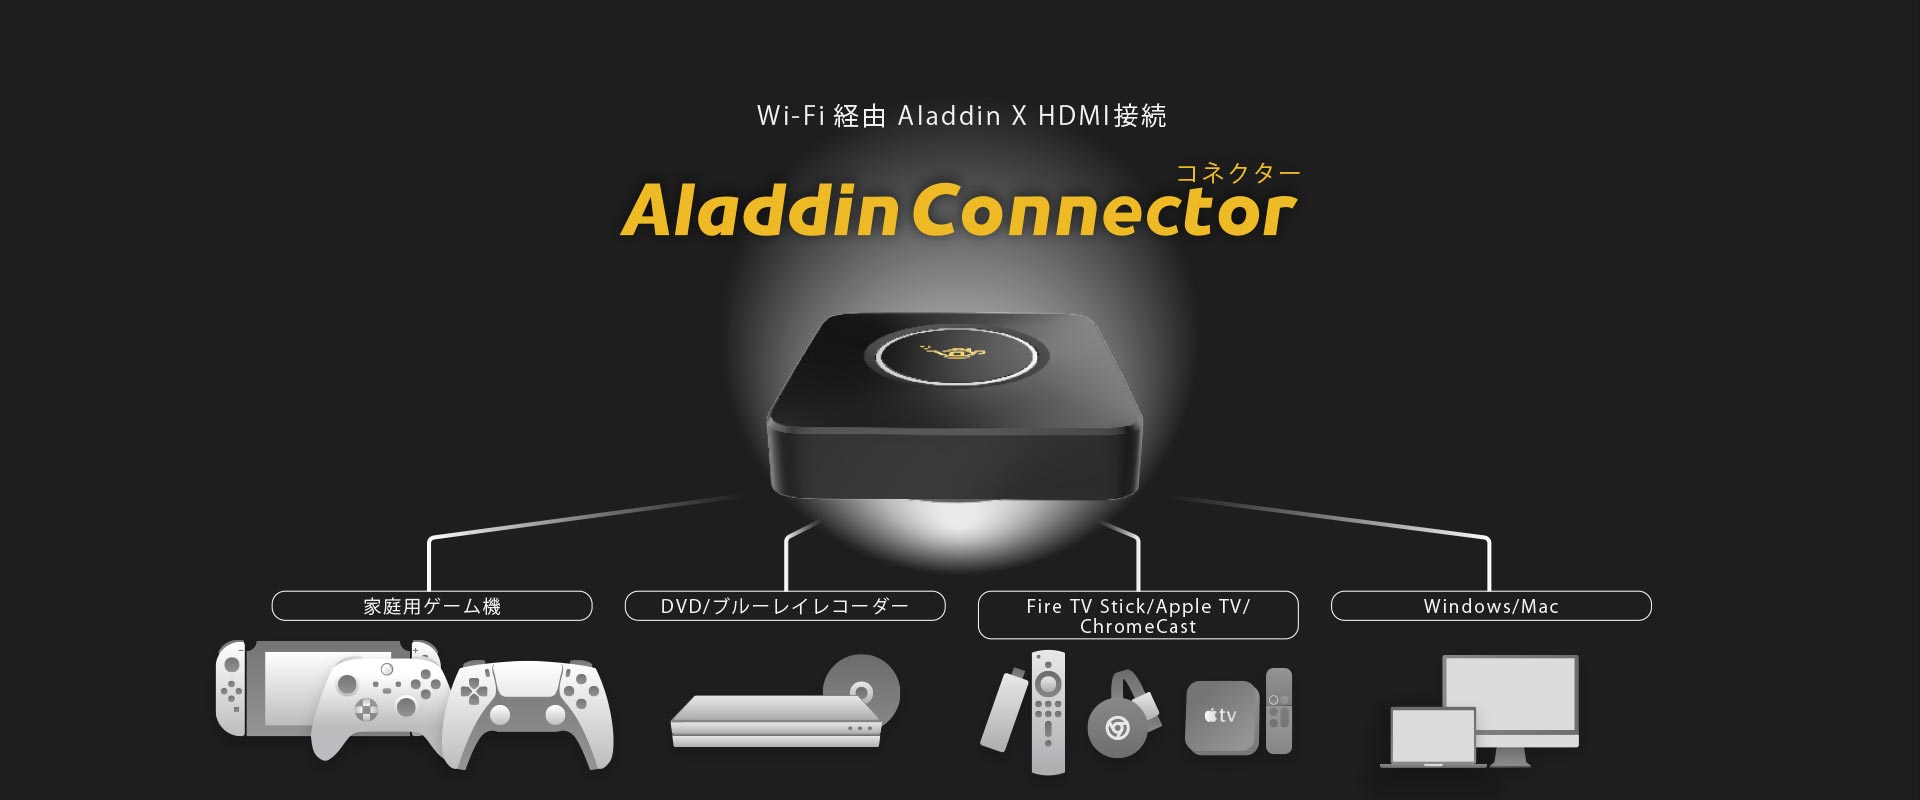 Aladdin Connector アラジンエックス ワイヤレスHDMIスマホ/家電 